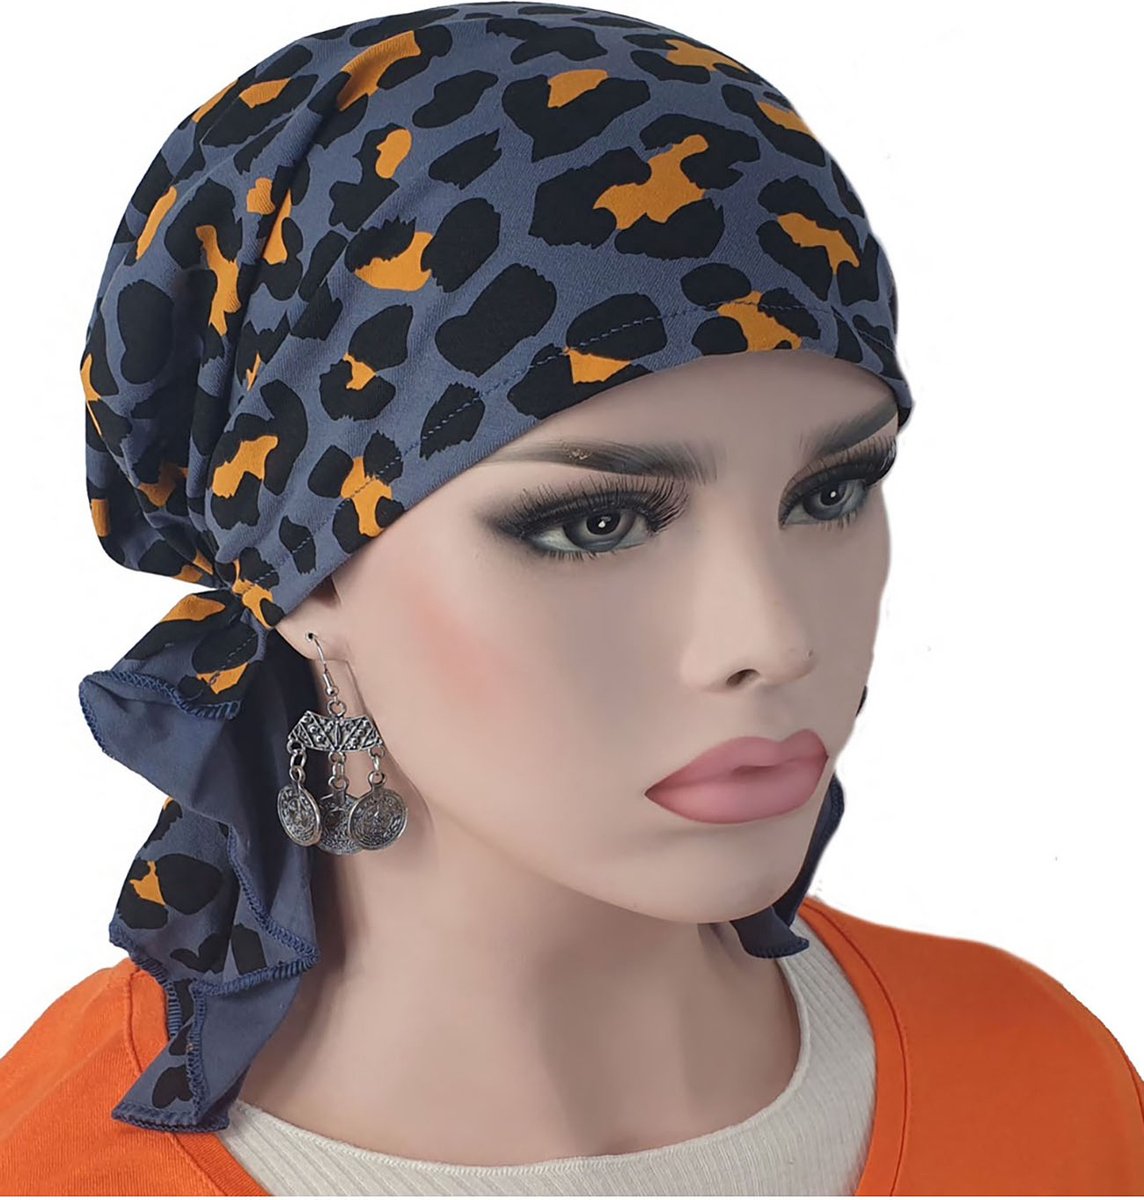 Bandana chemomuts hoofddoek voor haarverlies luipaard print grijsblauw